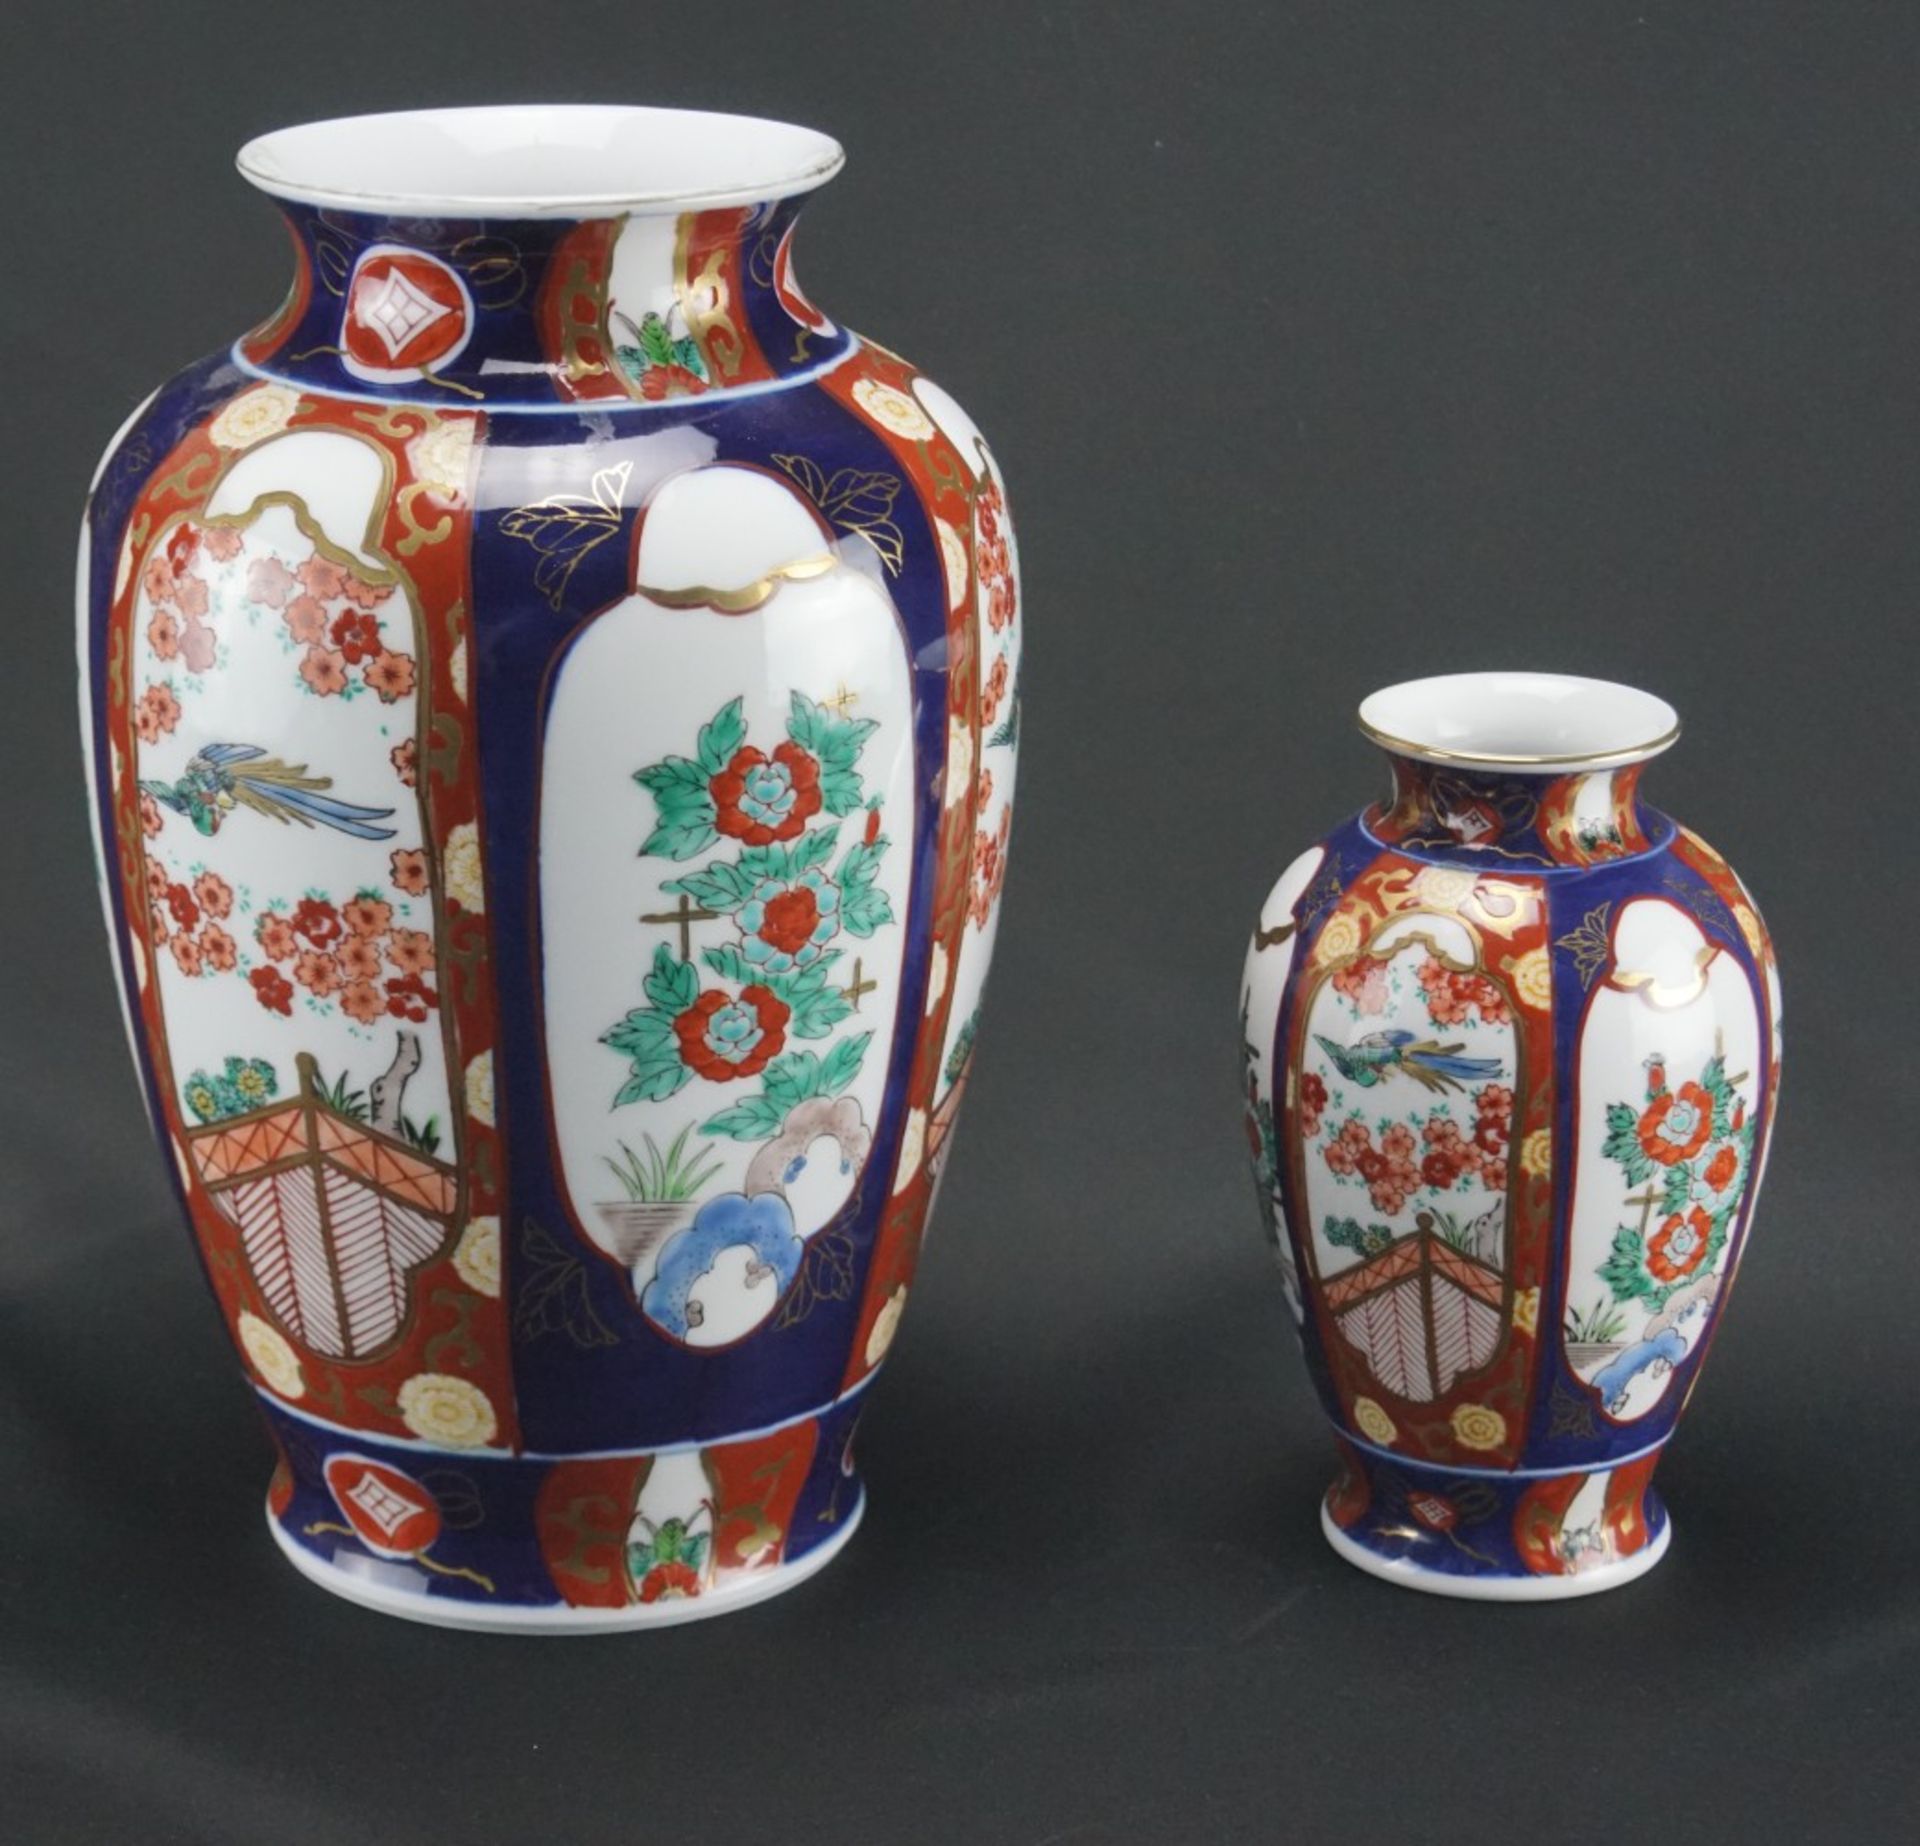 Zwei chinesische VasenPorzellan, Chinoiserien, Höhe der großen Vase 19 cm, Höhe der kleinen Vase